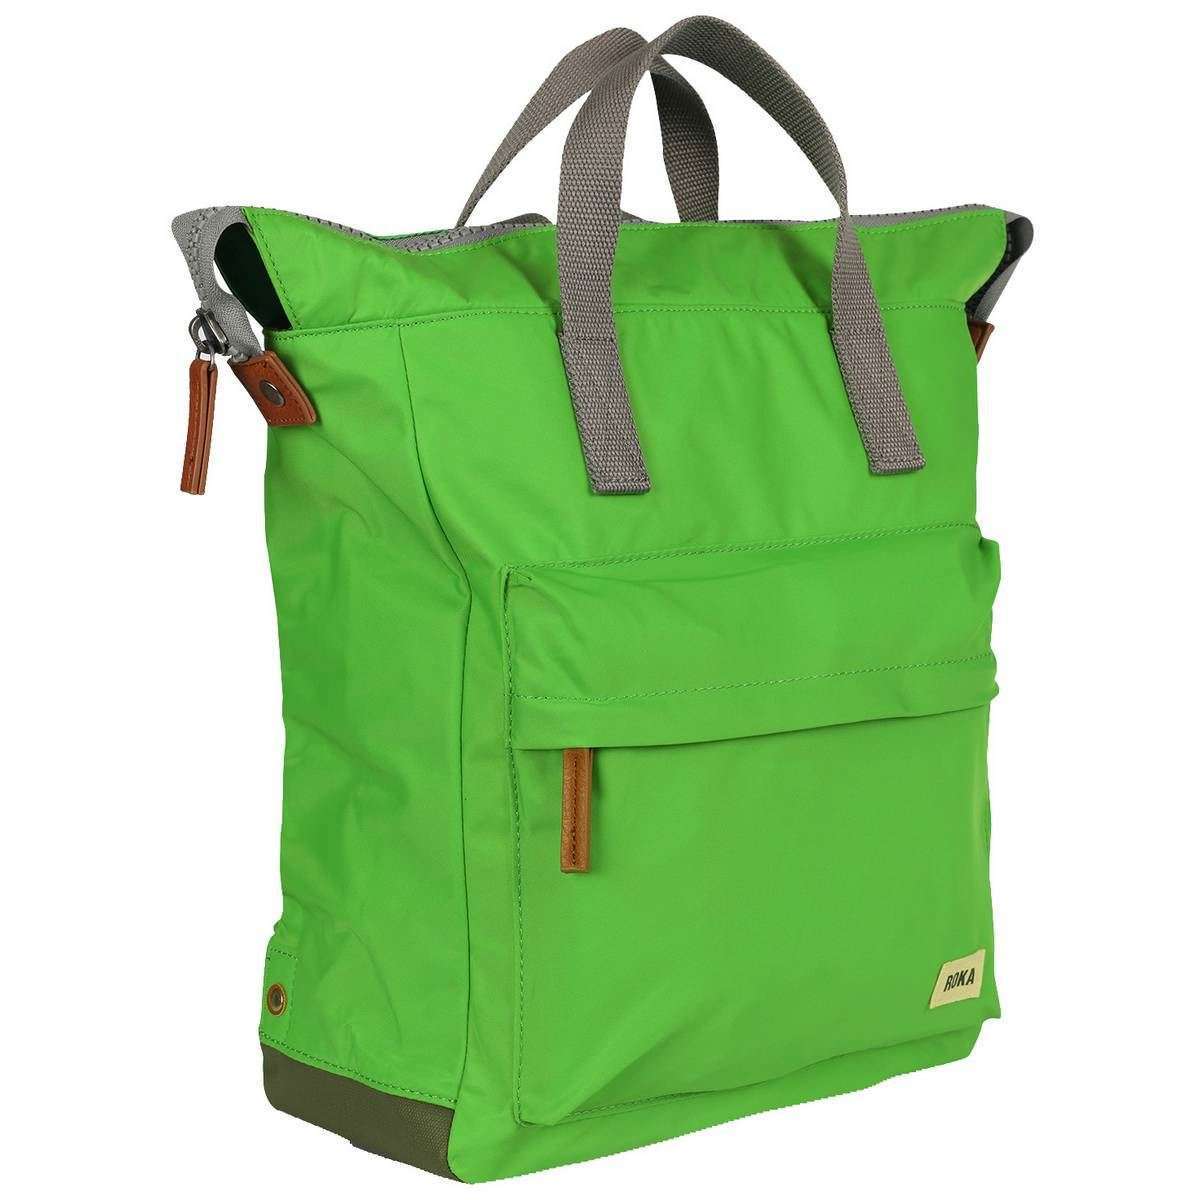 Roka Bantry B Medium Sustainable Nylon Backpack - Kelly Green